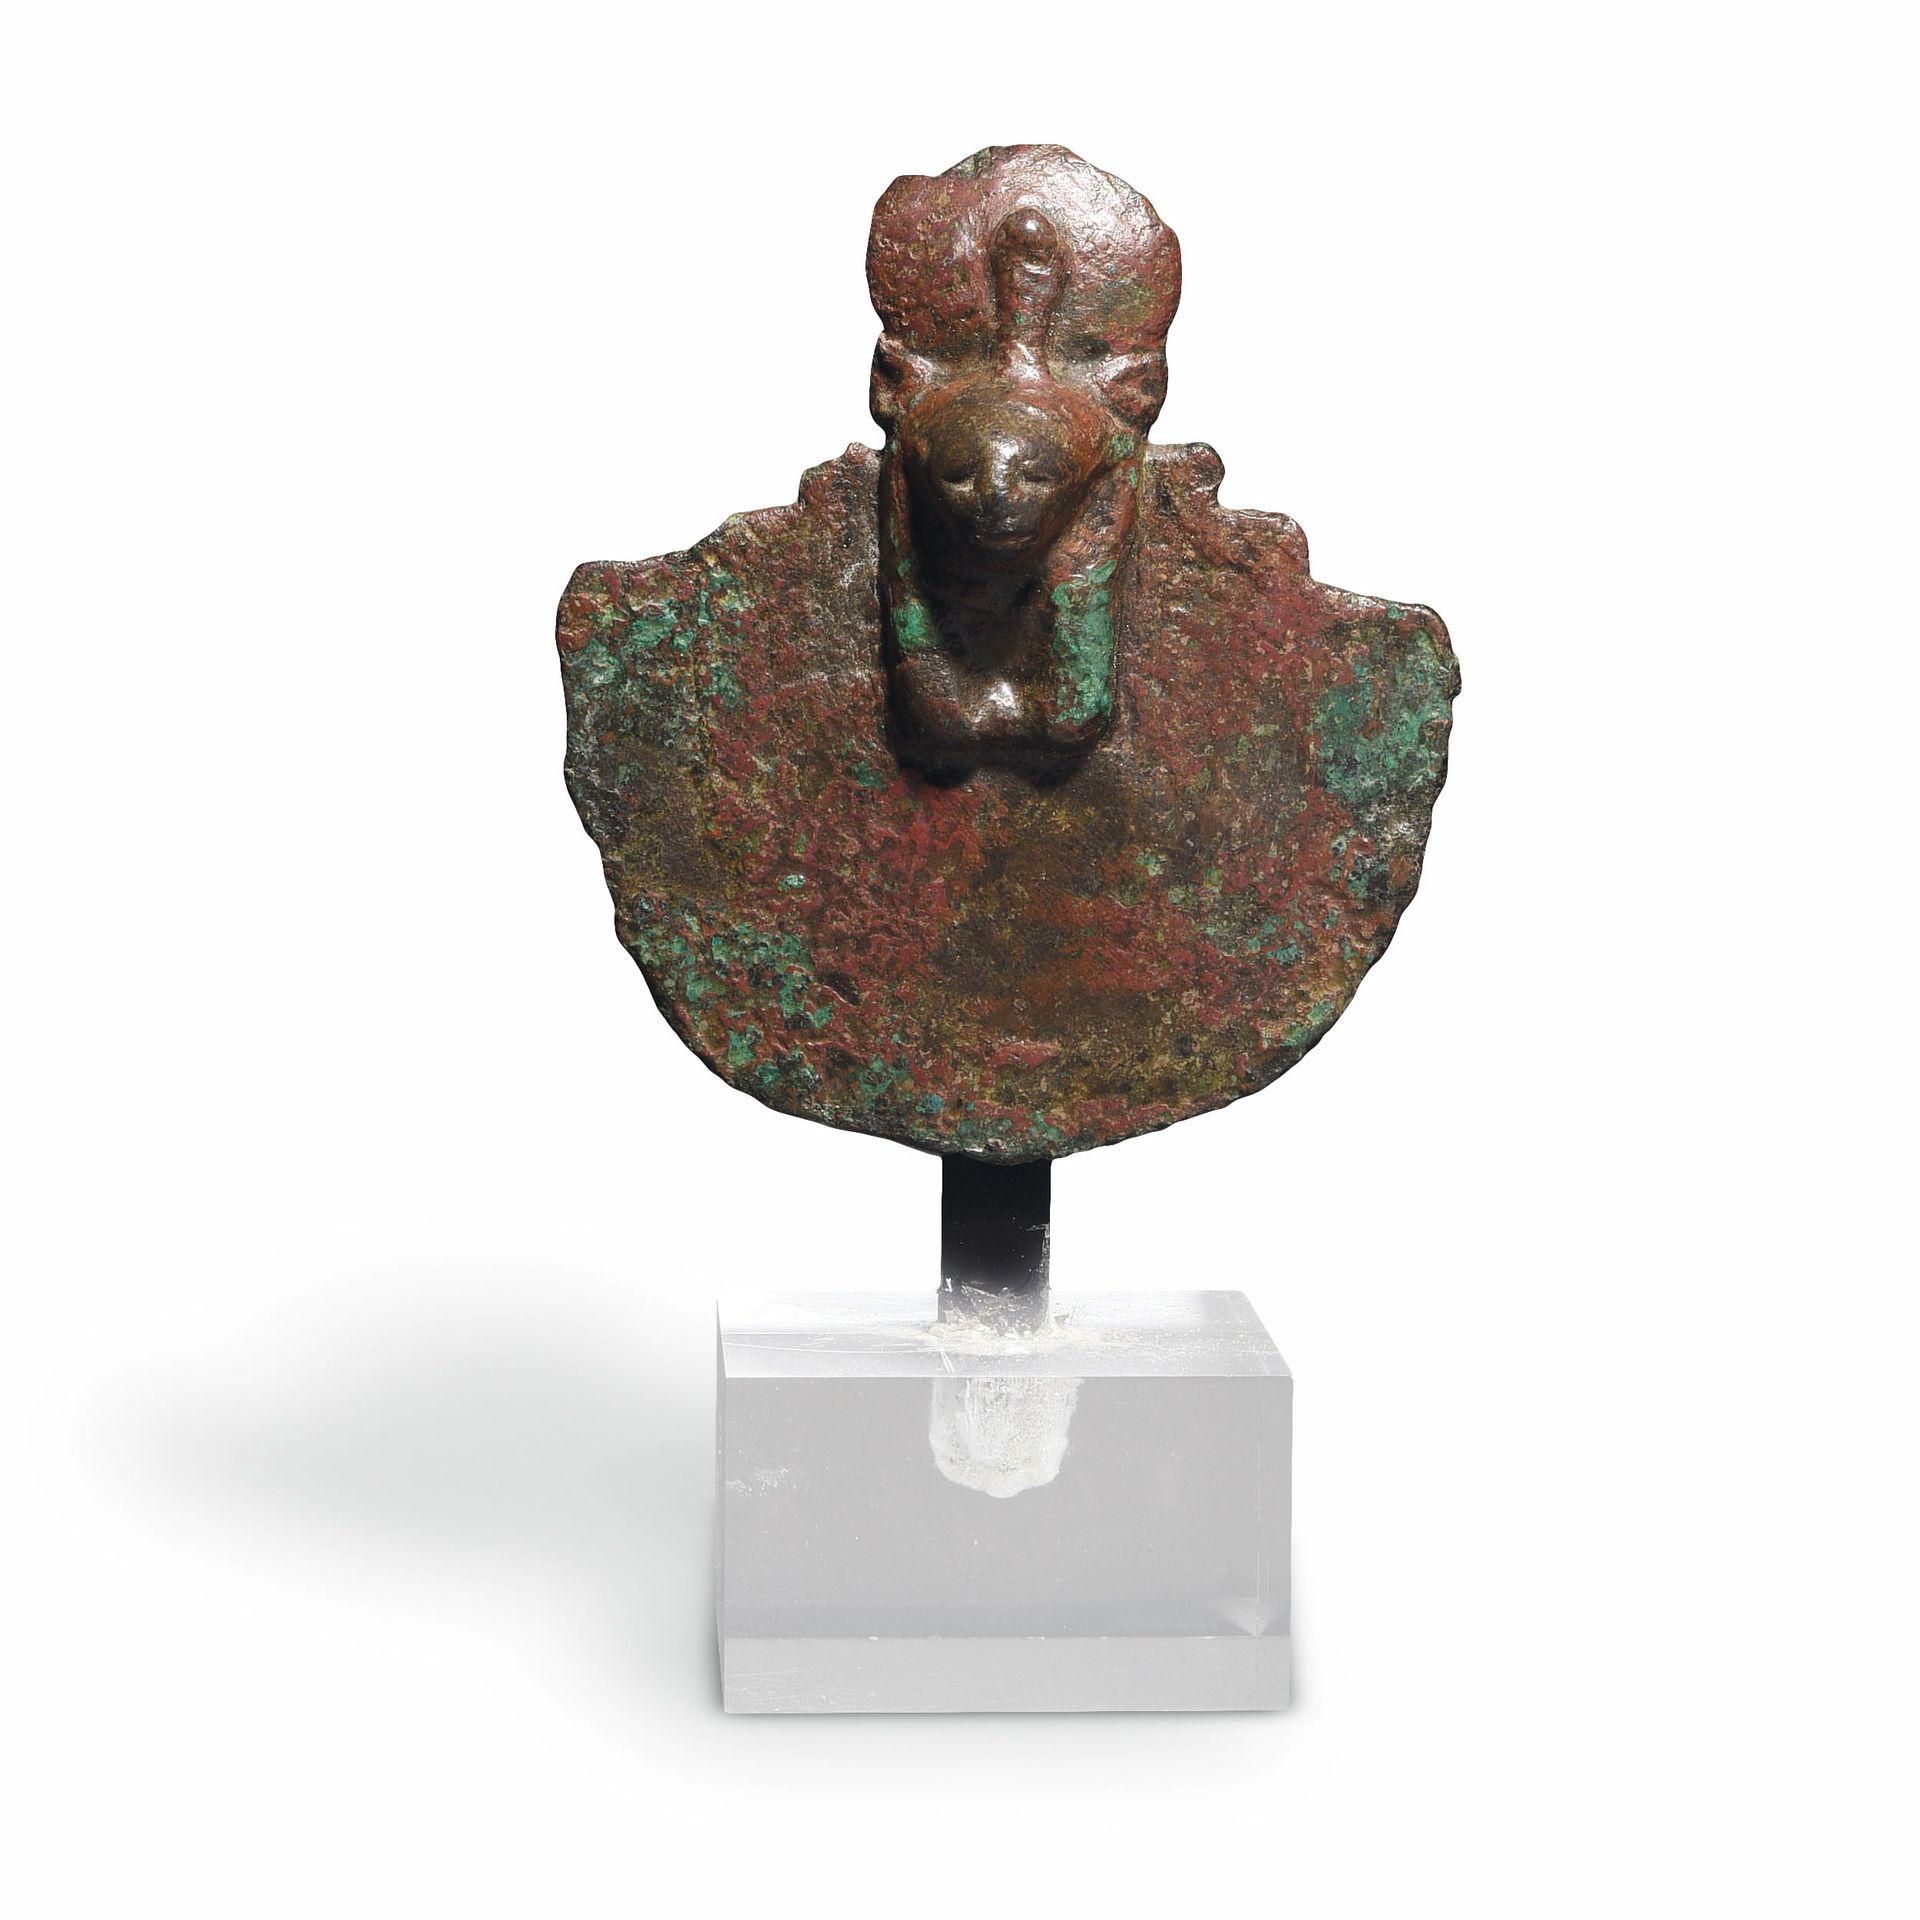 Null ÄGIDE DER SECHMET

Ägypten, Spätzeit, 664-332 v. Chr. 

Bronze mit grüner u&hellip;